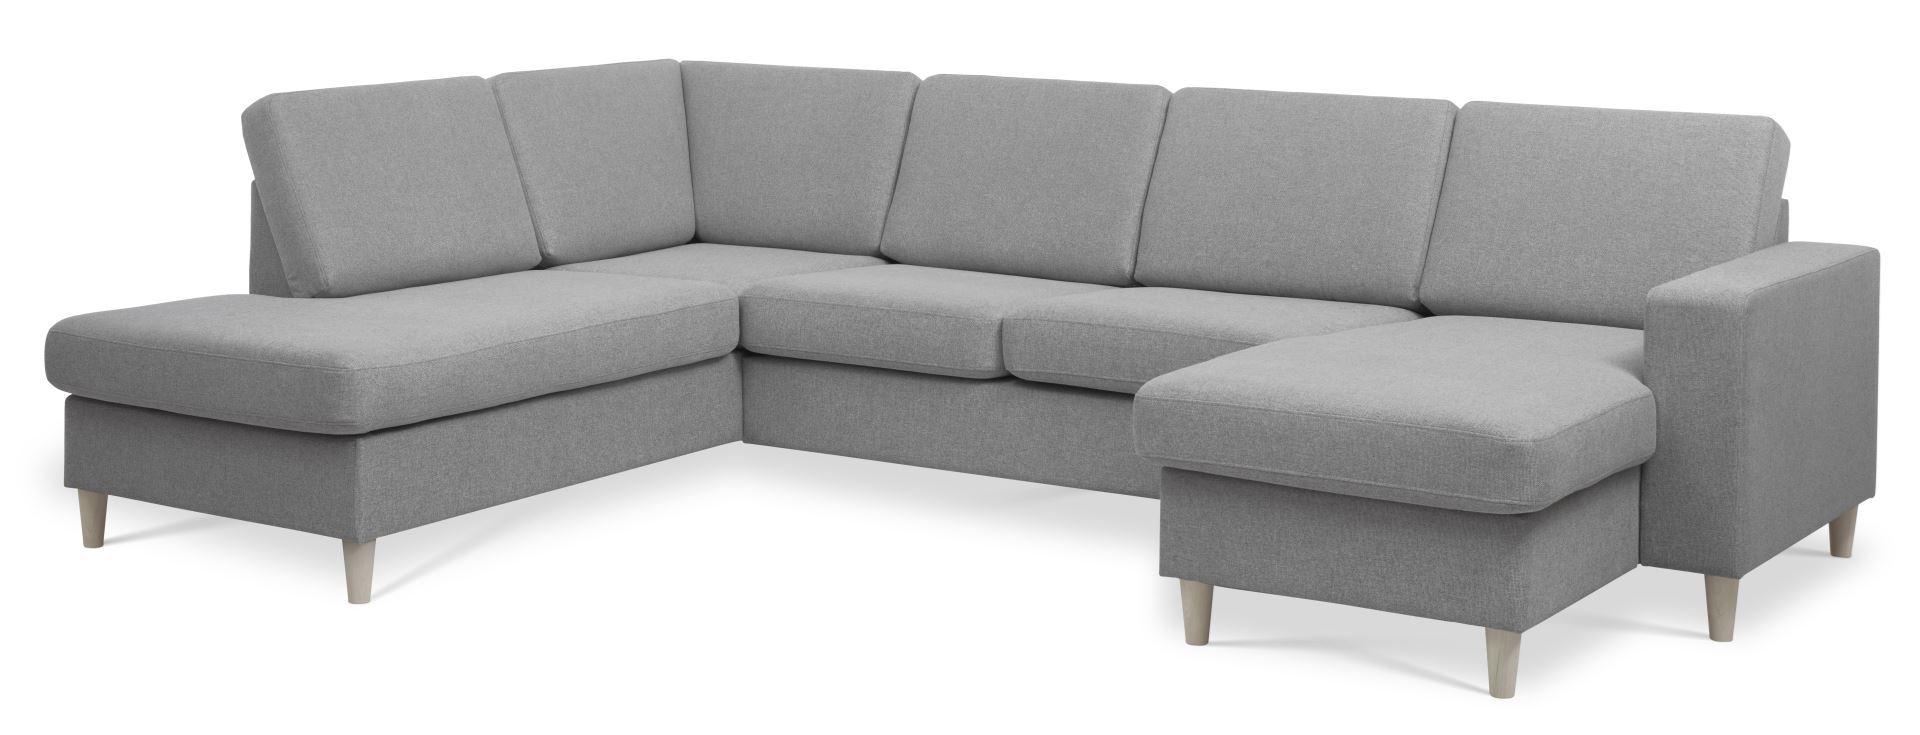 Pan set 4 U OE left sofa med chaiselong - grå polyester stof og natur træ